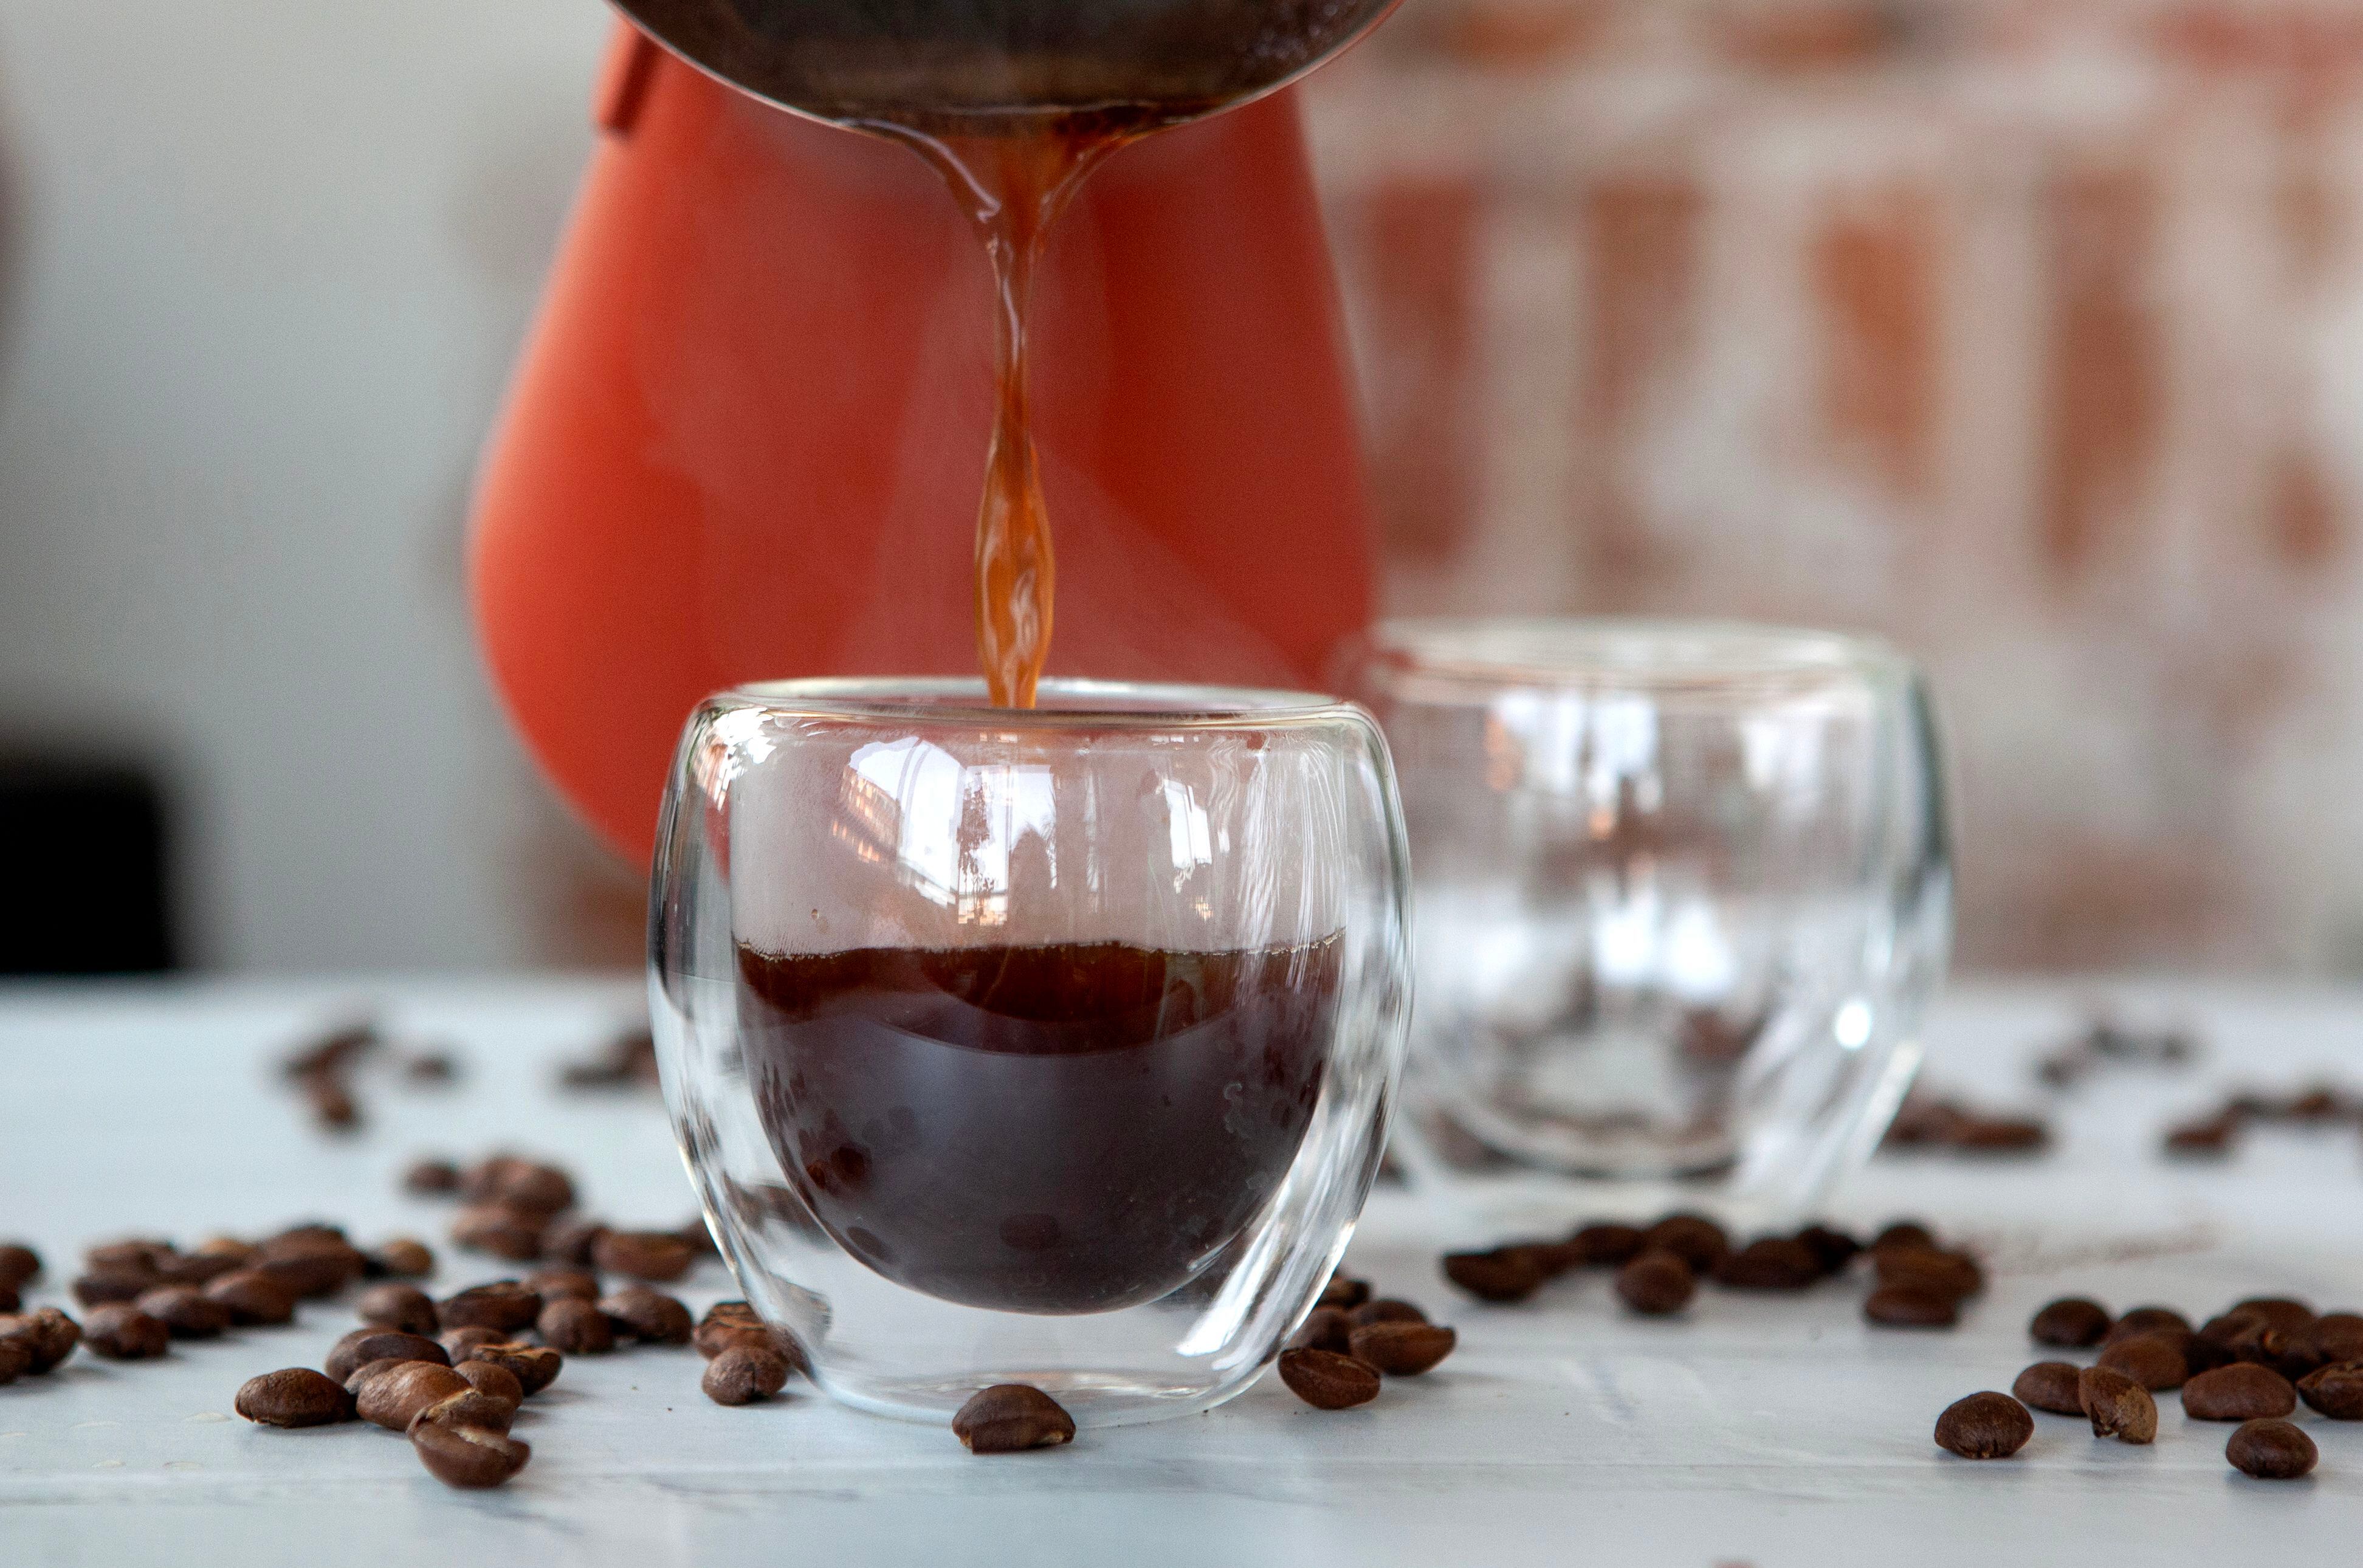 Una taza de café puede alargar tu vida pero, ¿cuánto es una taza de café?